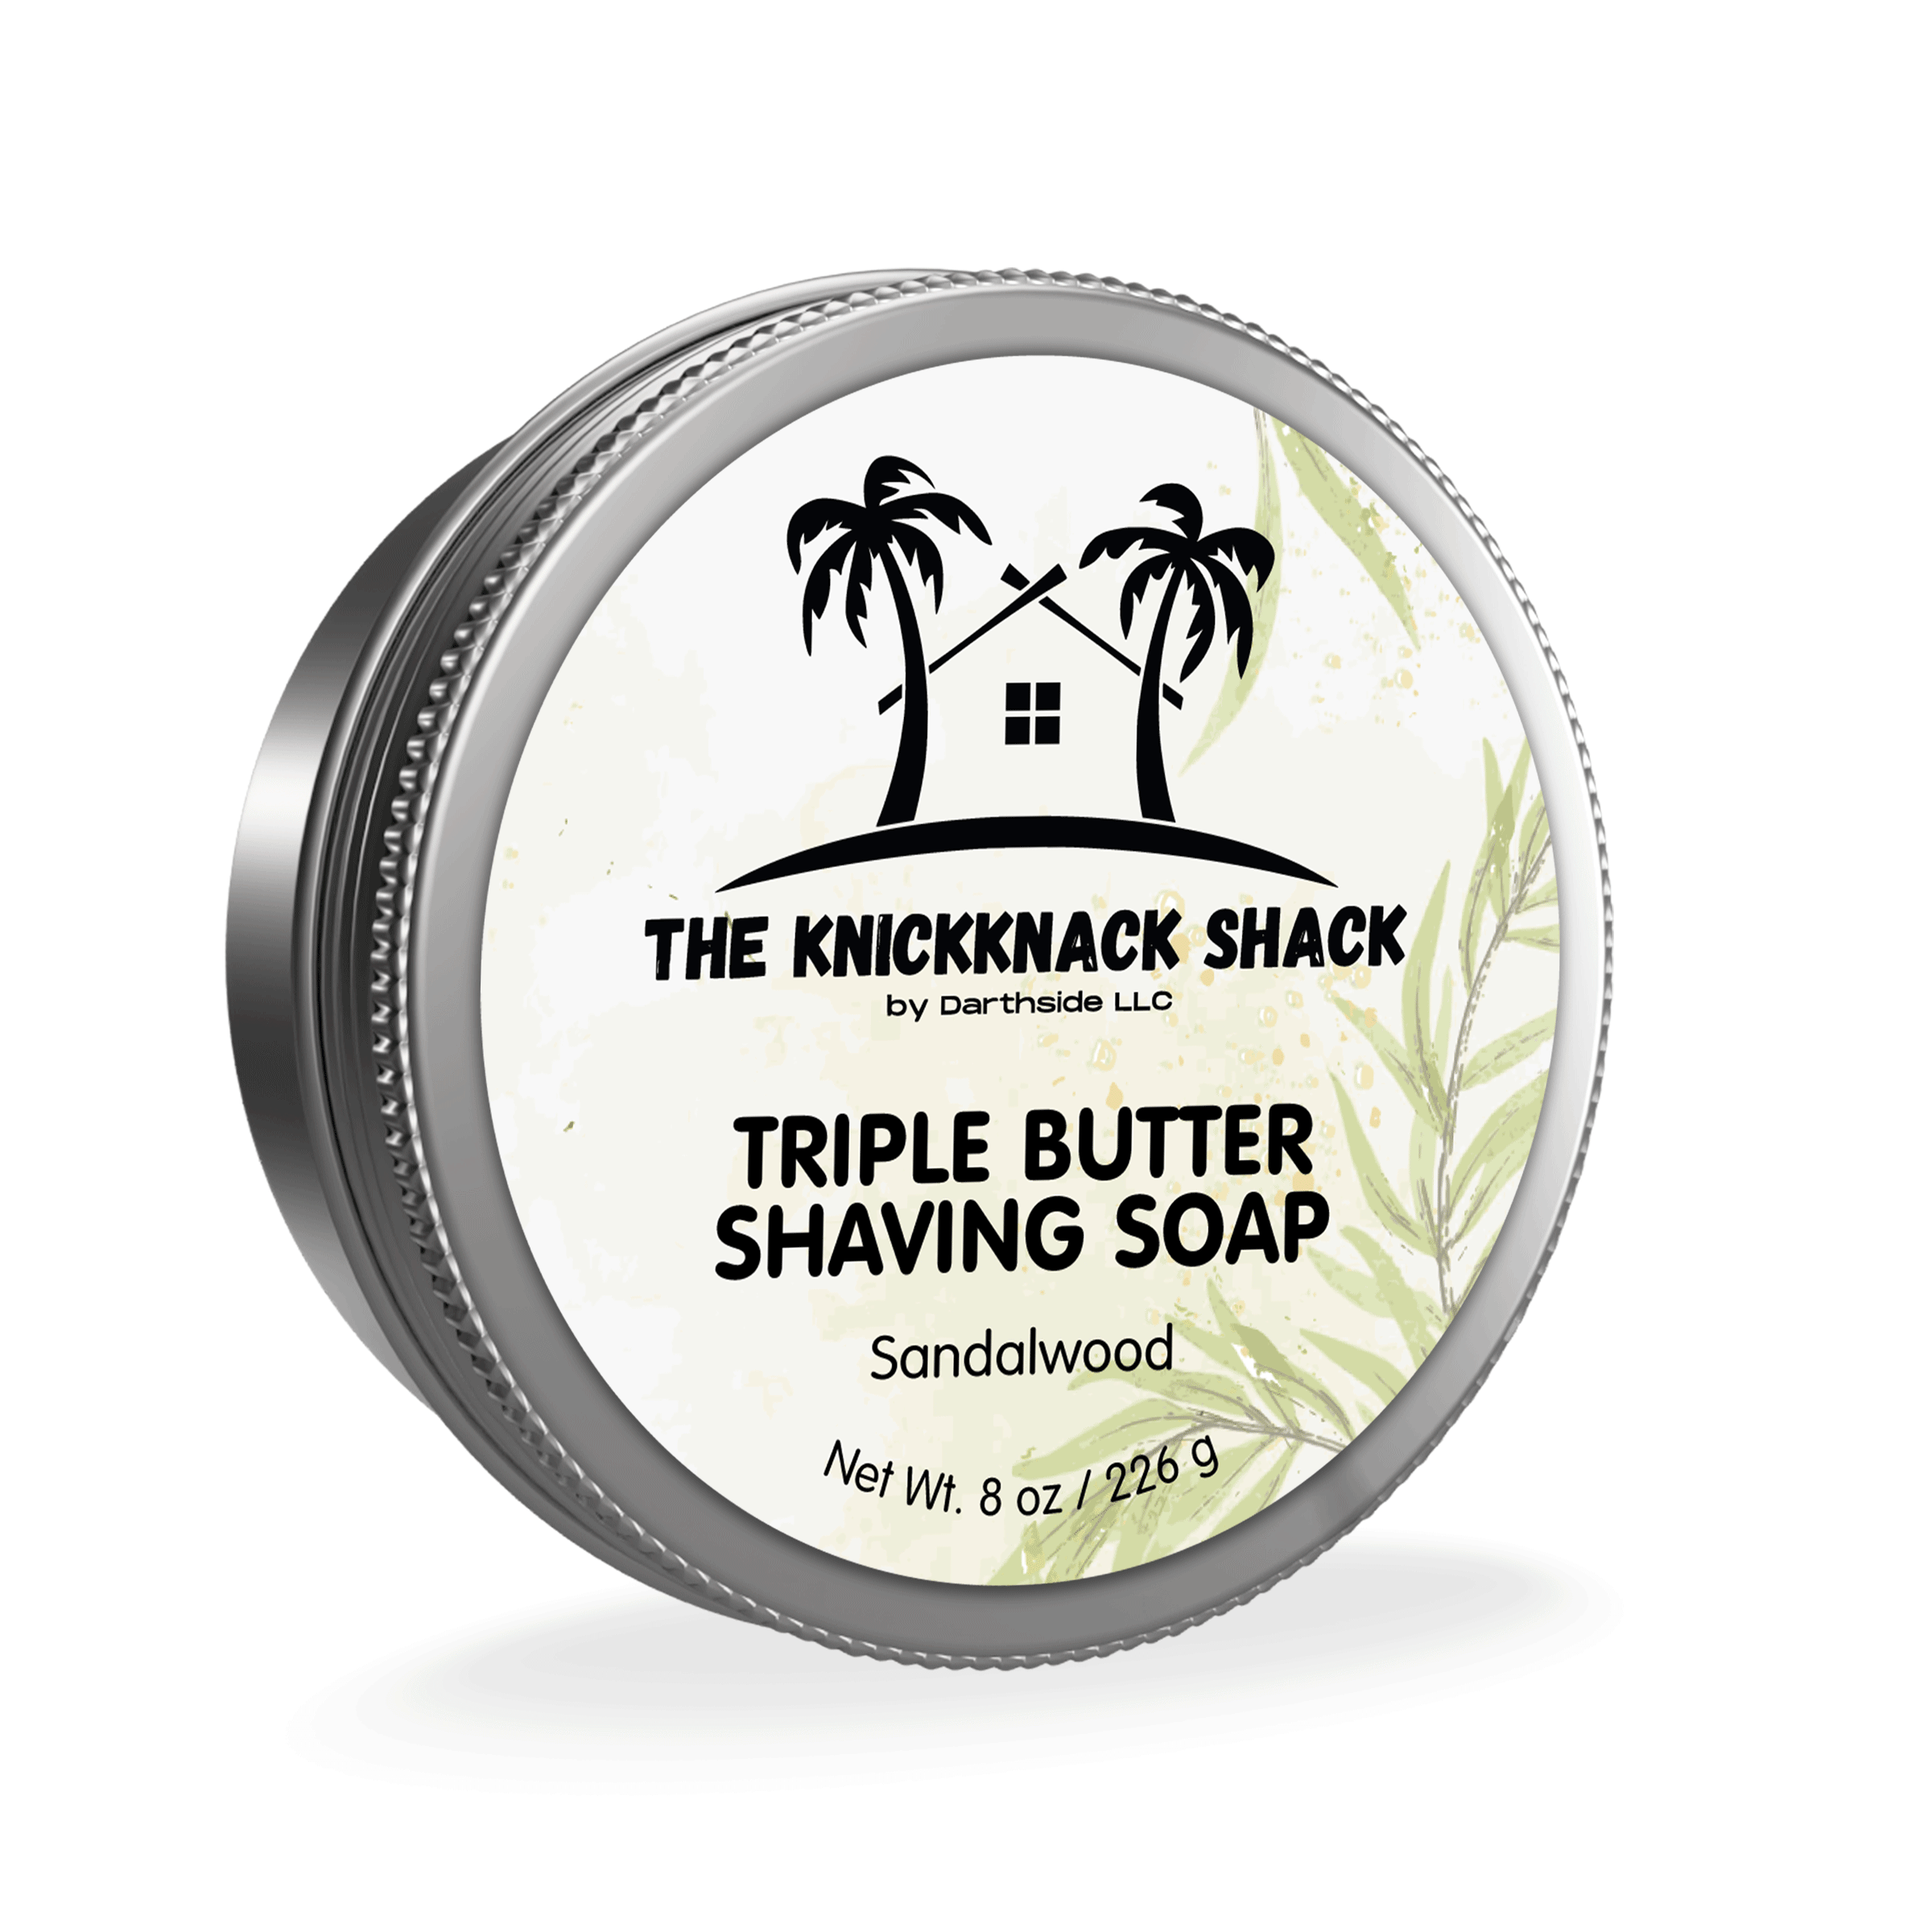 Sandalwood Shaving Soap